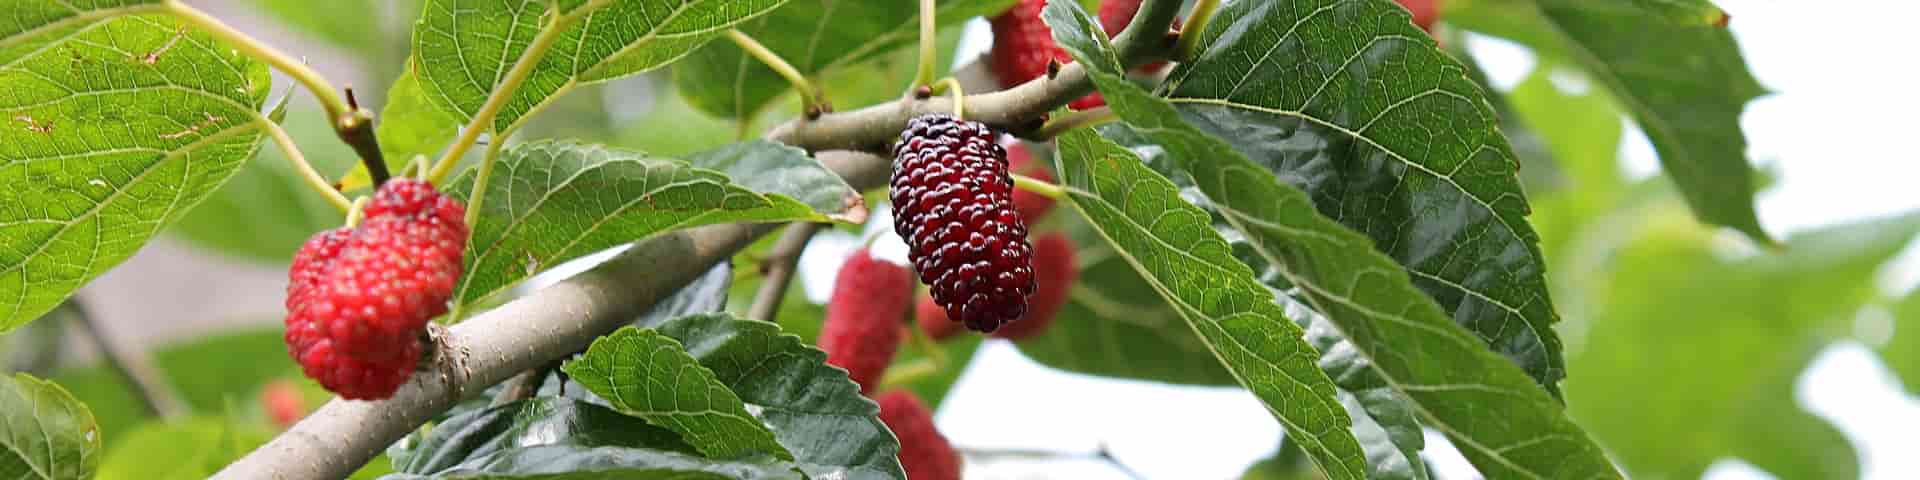 Maulbeer-Früchte am Baum von veredelten Maulbeerbaum-Sorten